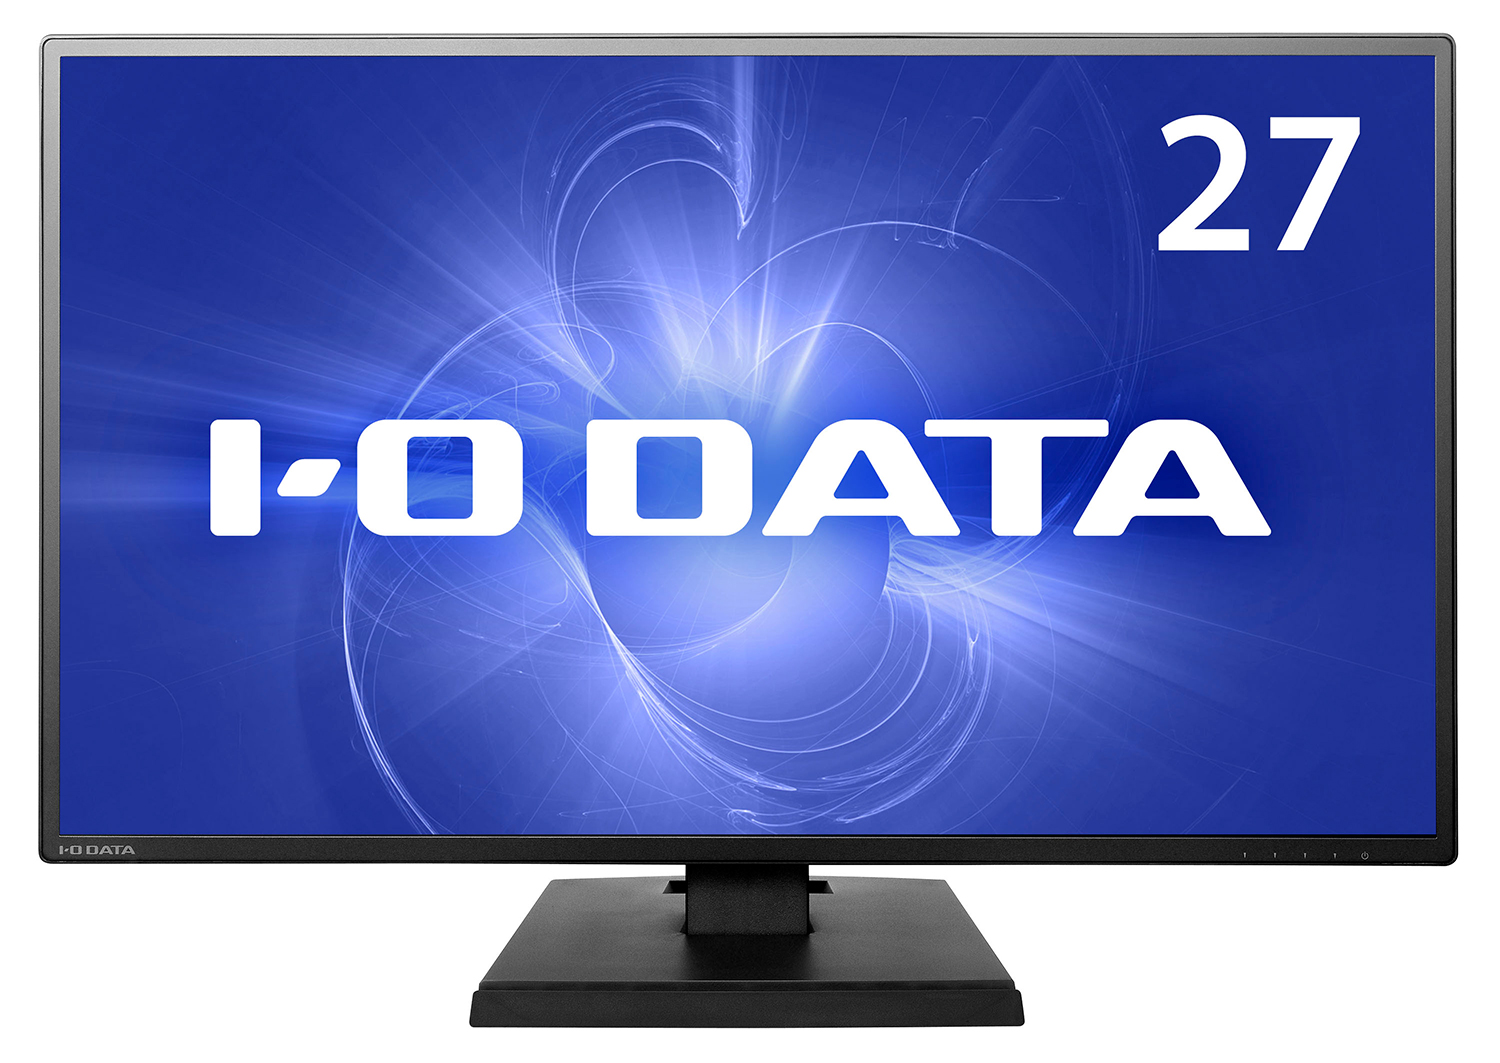 KH270V | 個人向けワイドモデル | IODATA アイ・オー・データ機器